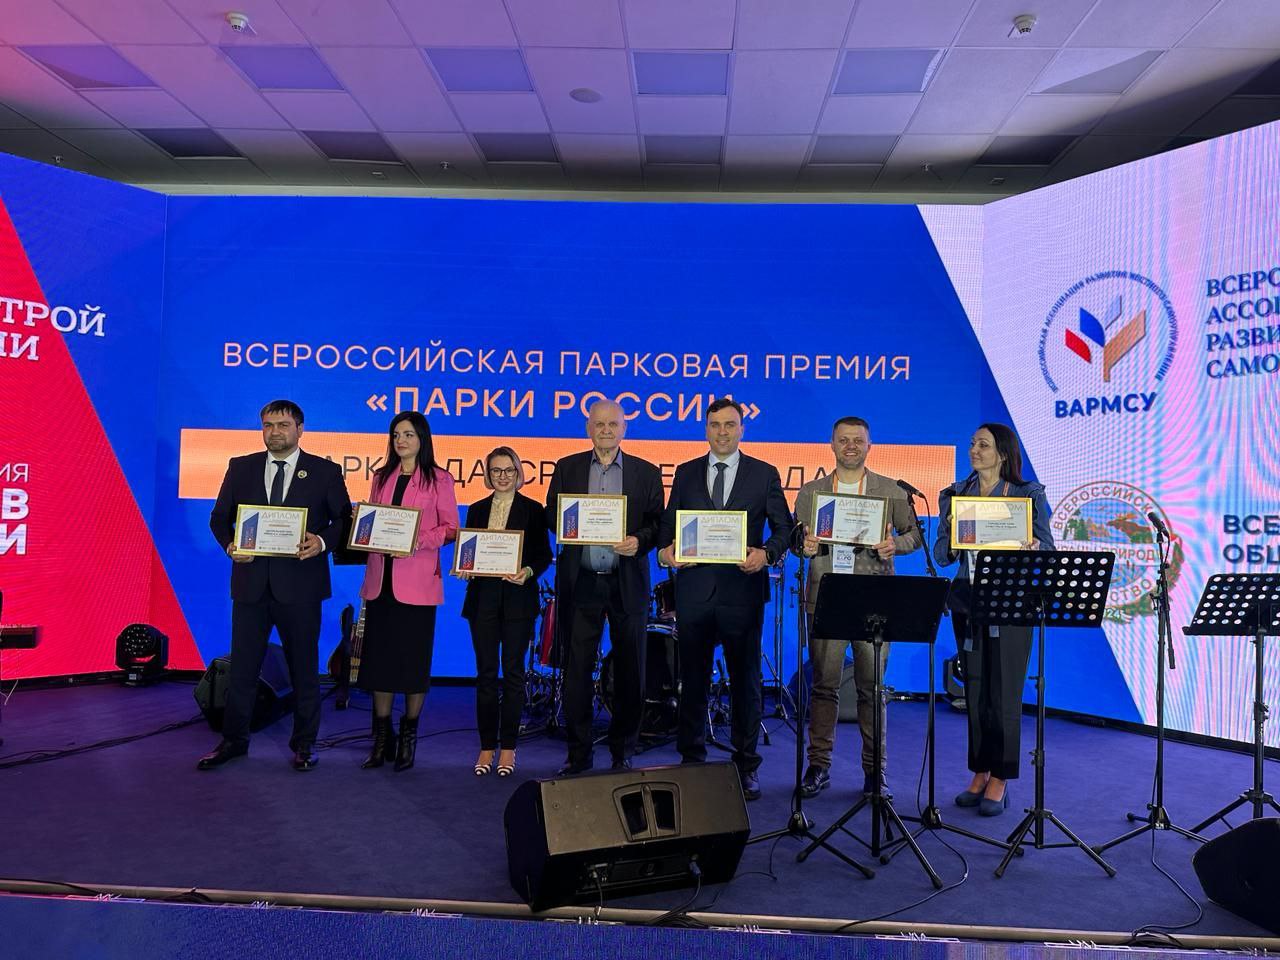 Парк культуры и отдыха Нерюнгри стал финалистом всероссийской парковой премии